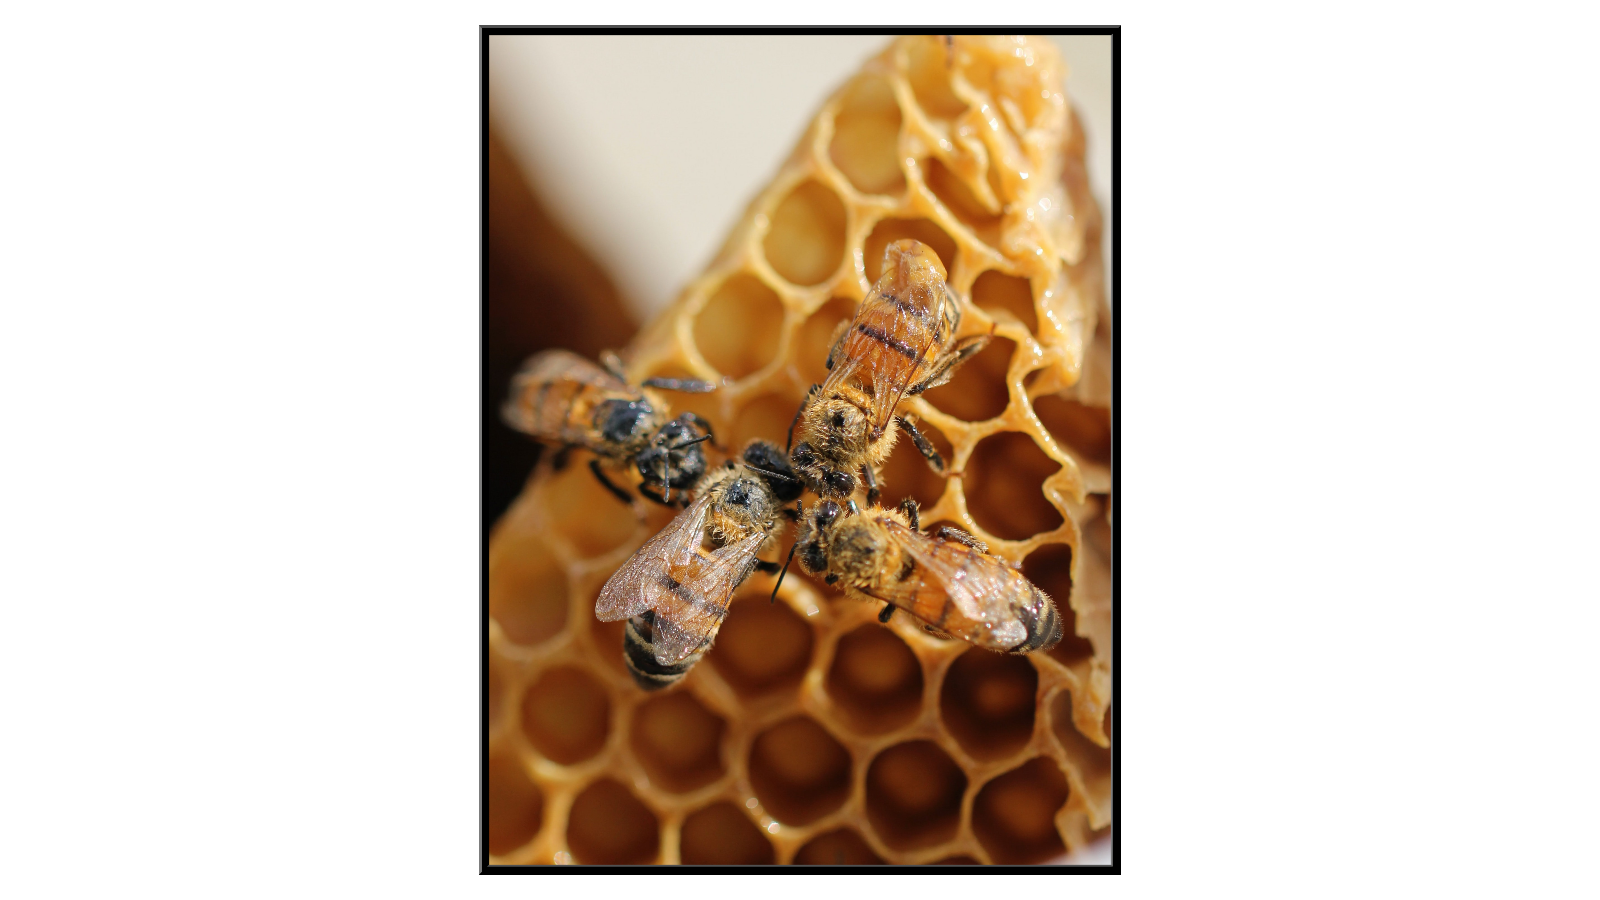 Cztery pszczoły na plastrze miodu